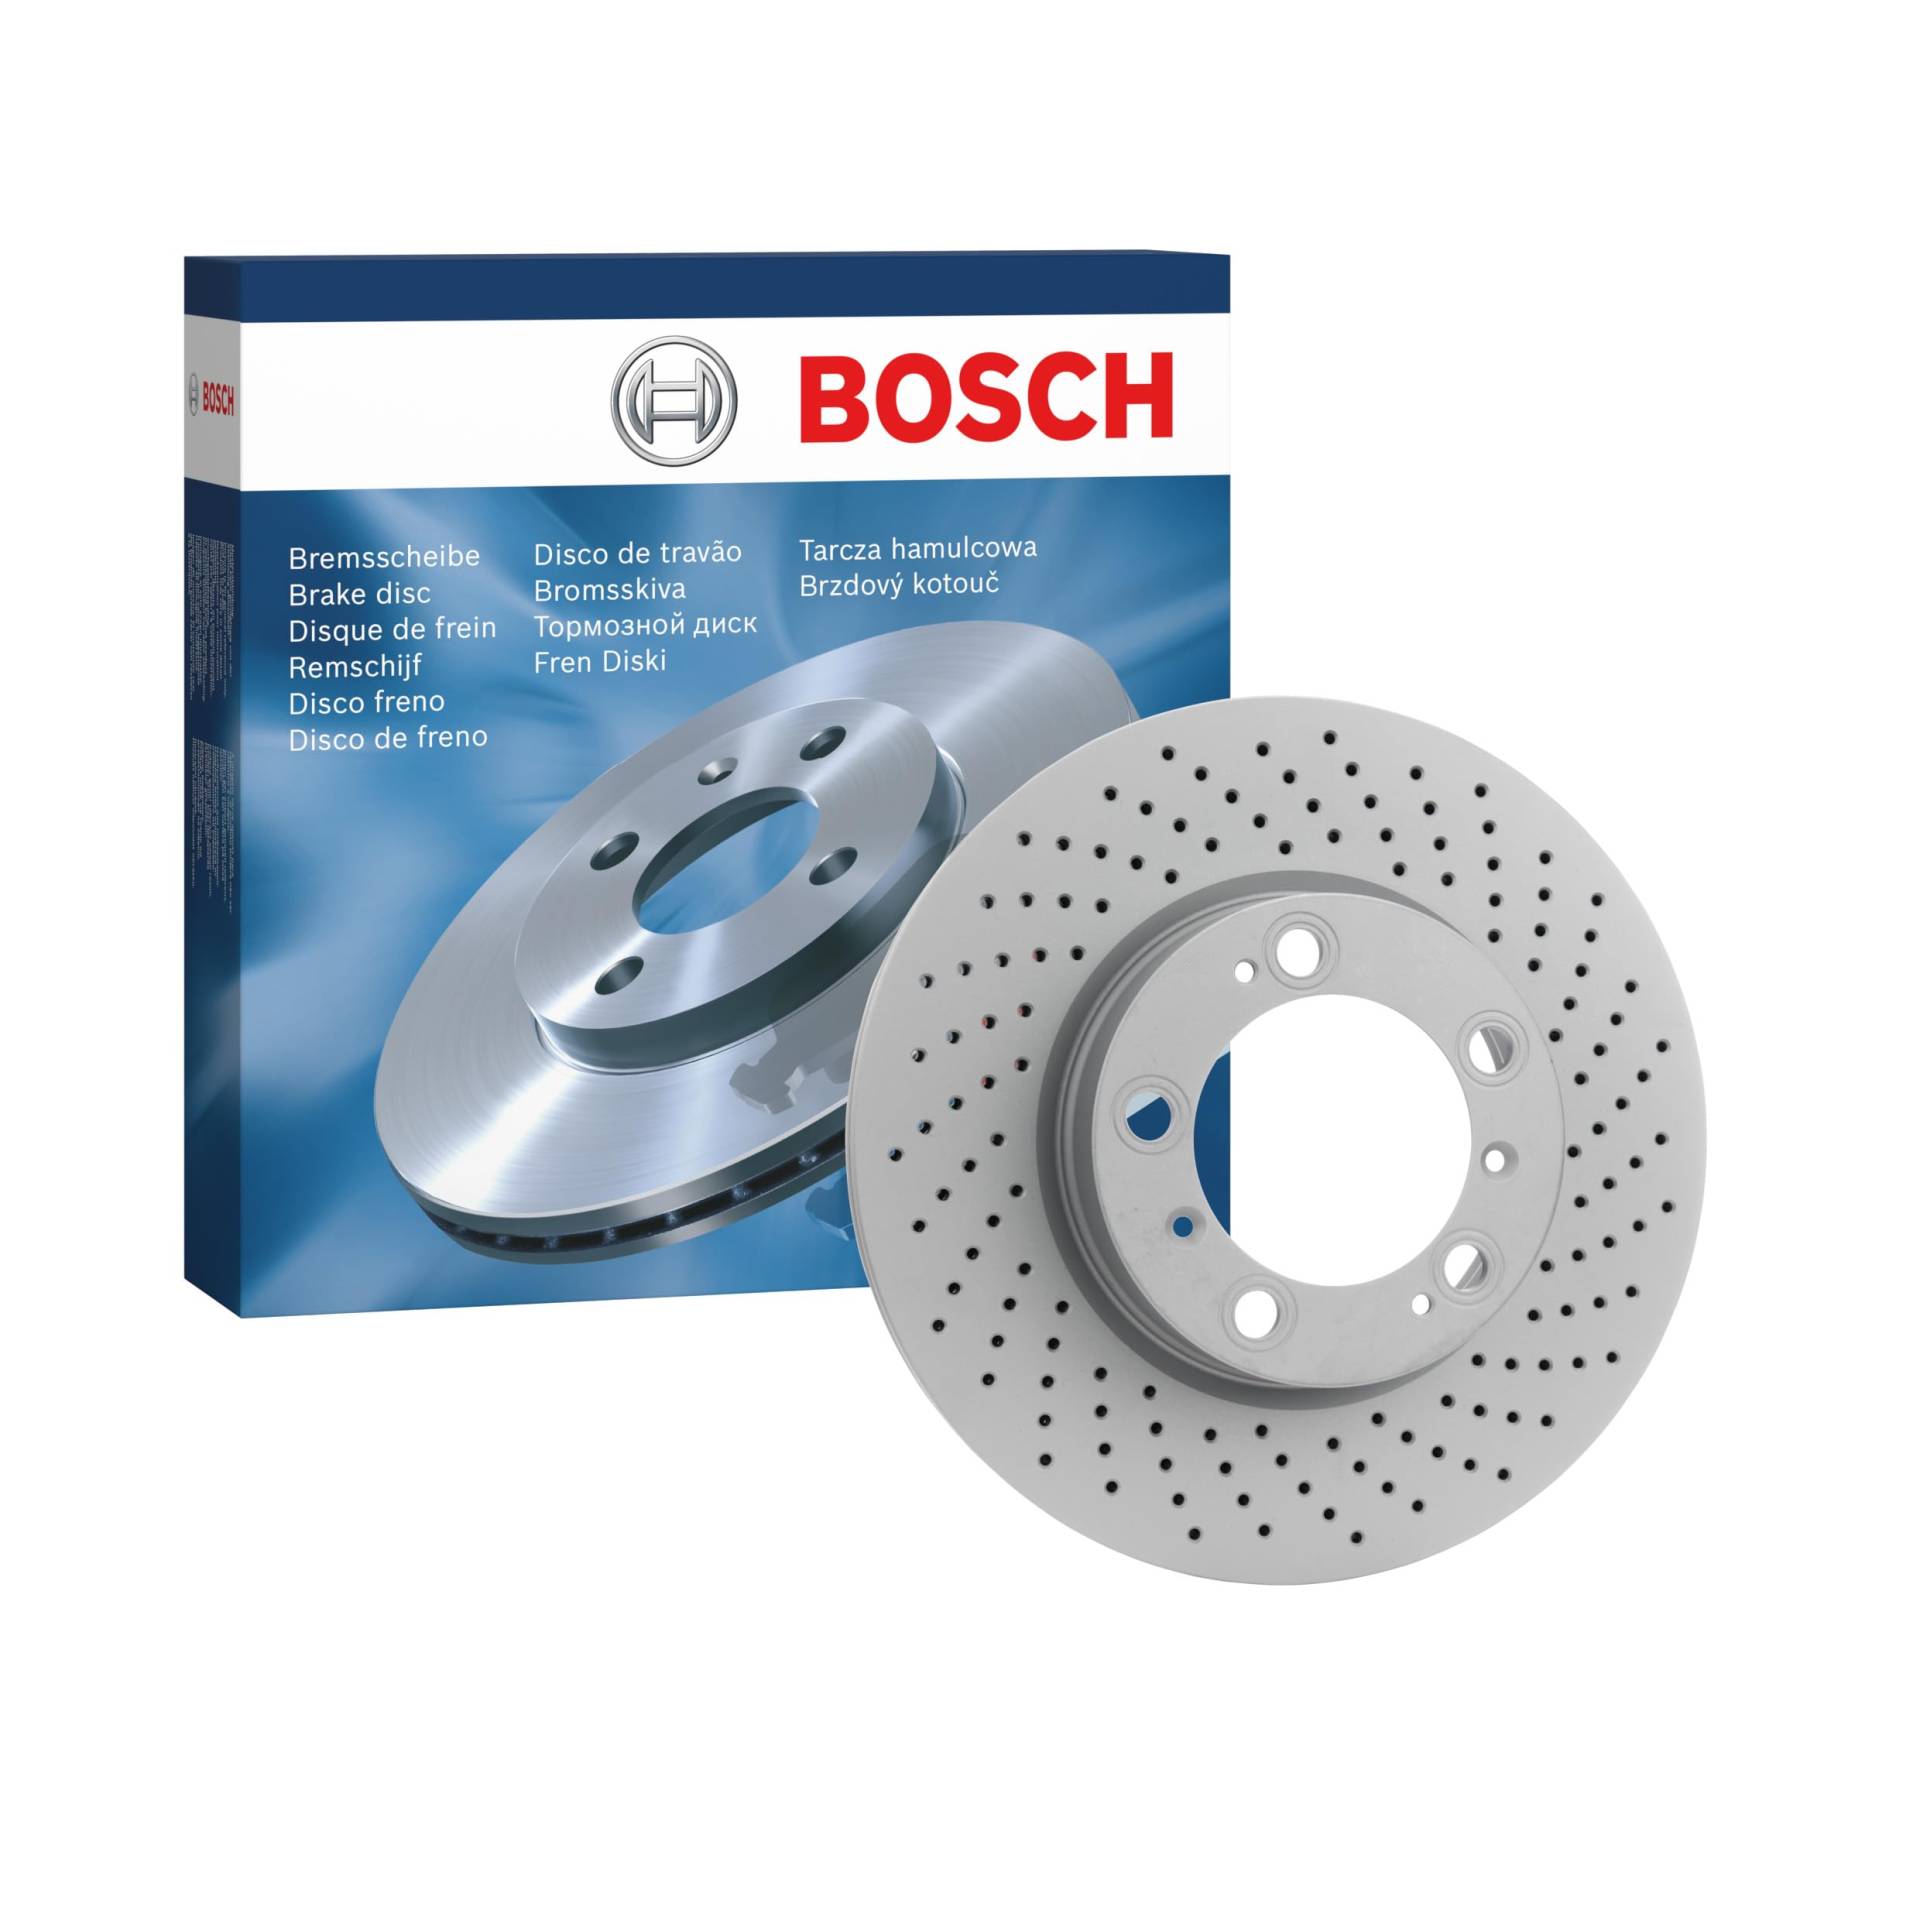 Bosch BD1394 Bremsscheiben - Vorderachse - ECE-R90 Zertifizierung - eine Bremsscheibe von Bosch Automotive